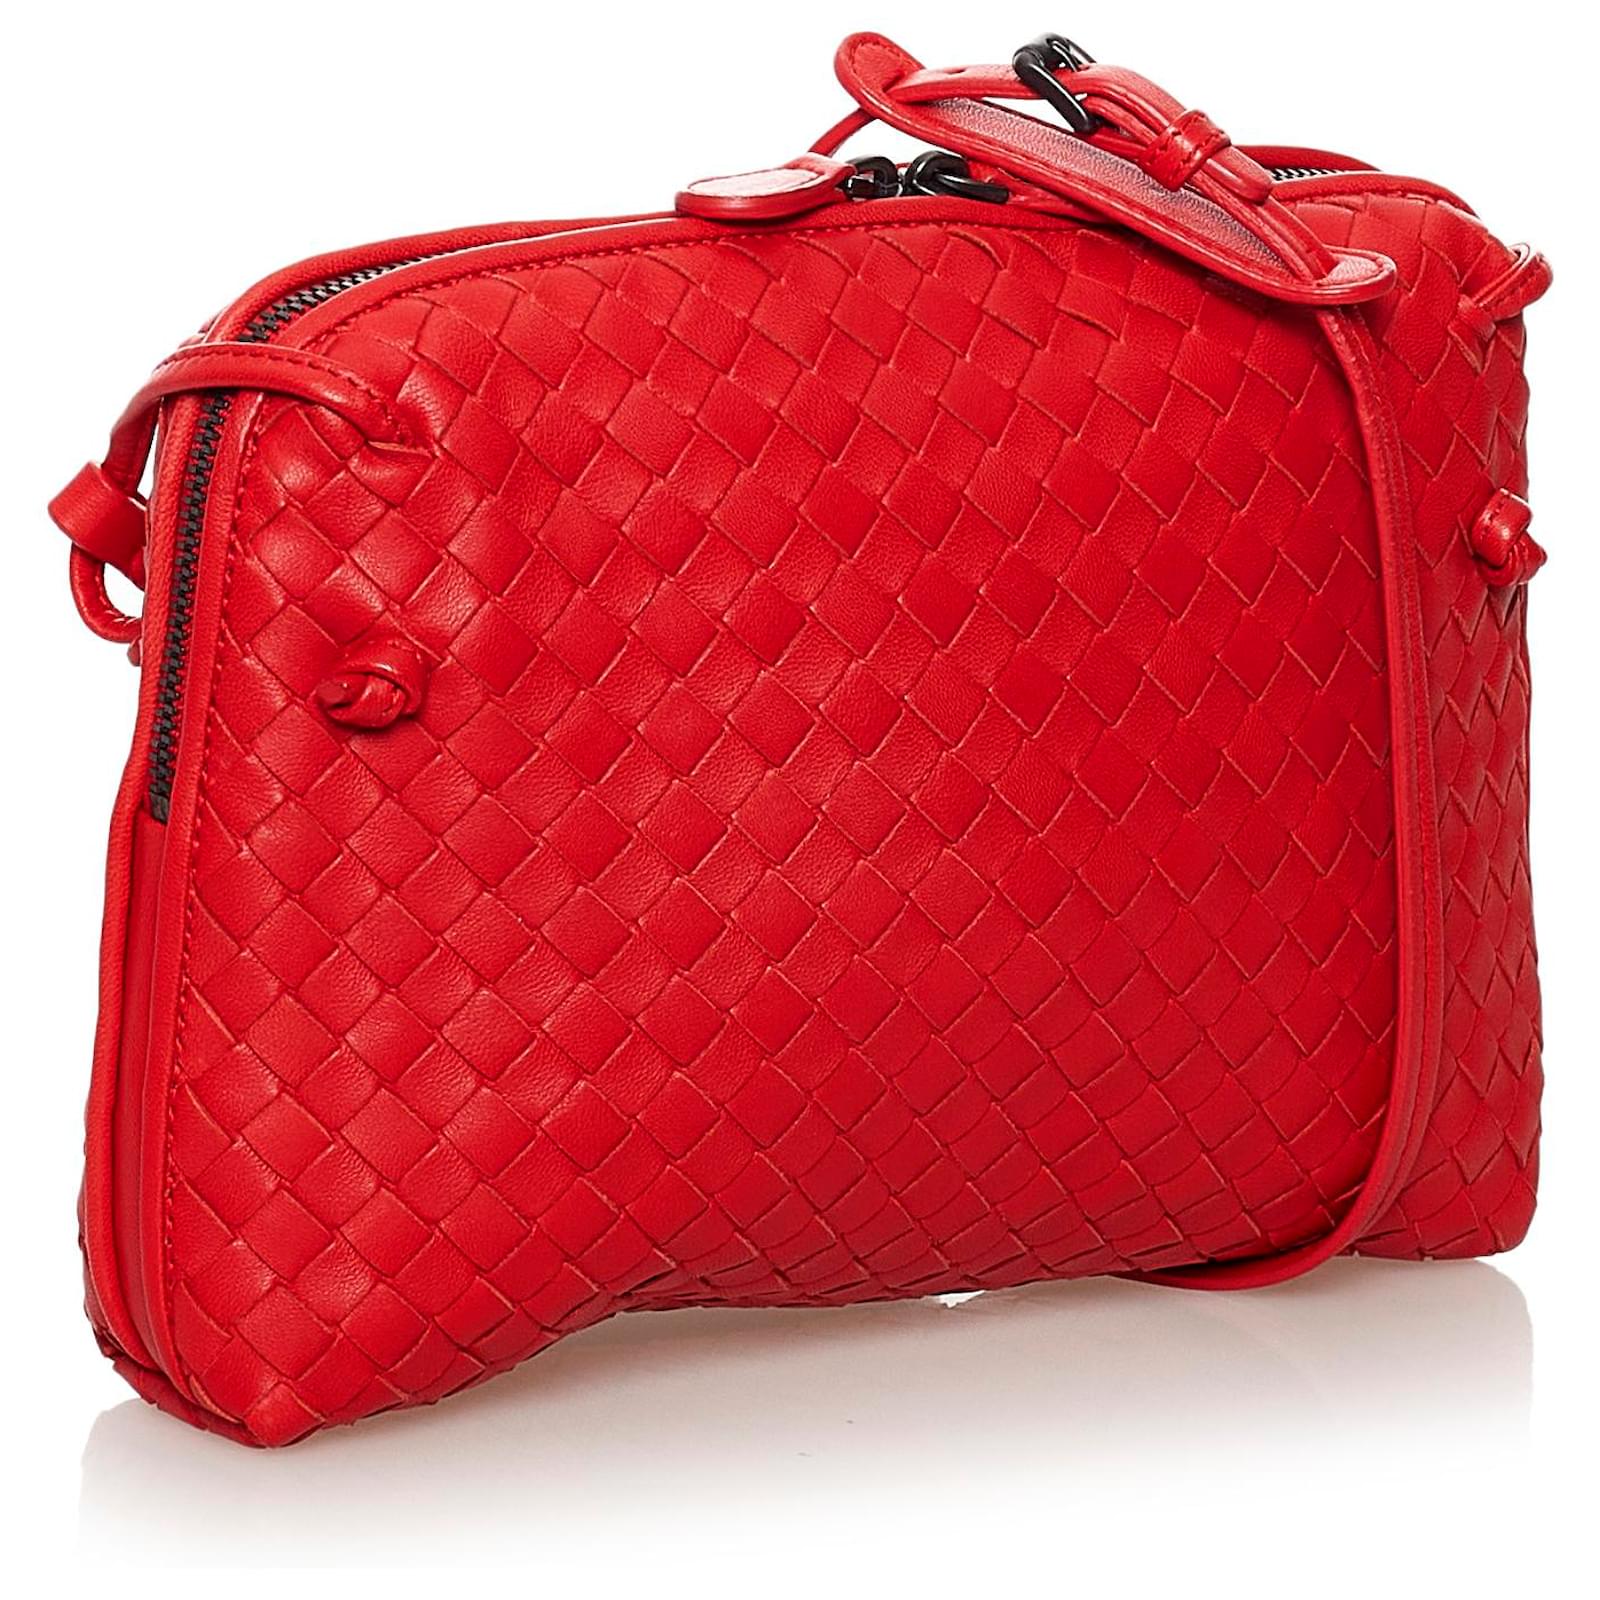 Bottega Veneta Nodini Intrecciato Leather Crossbody Bag In Red